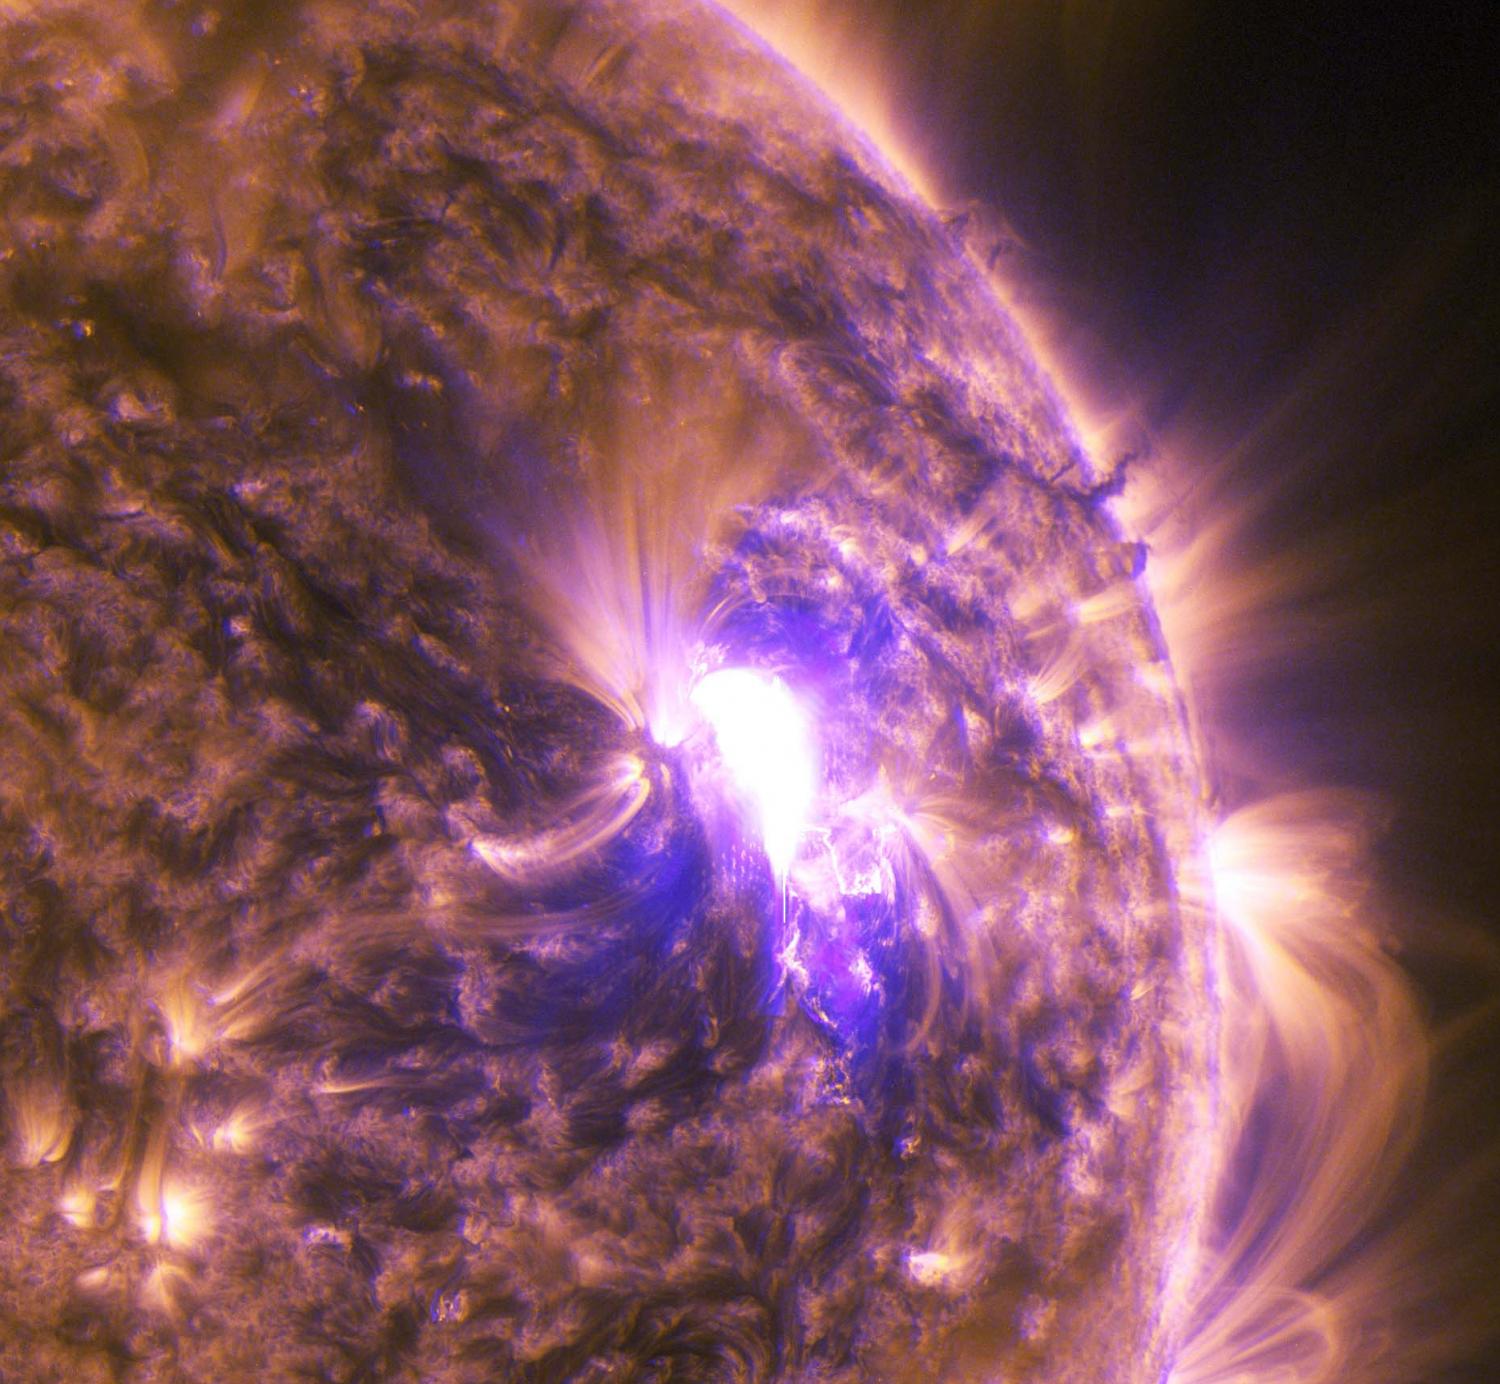 NASA's SDO sees mid-level solar flare